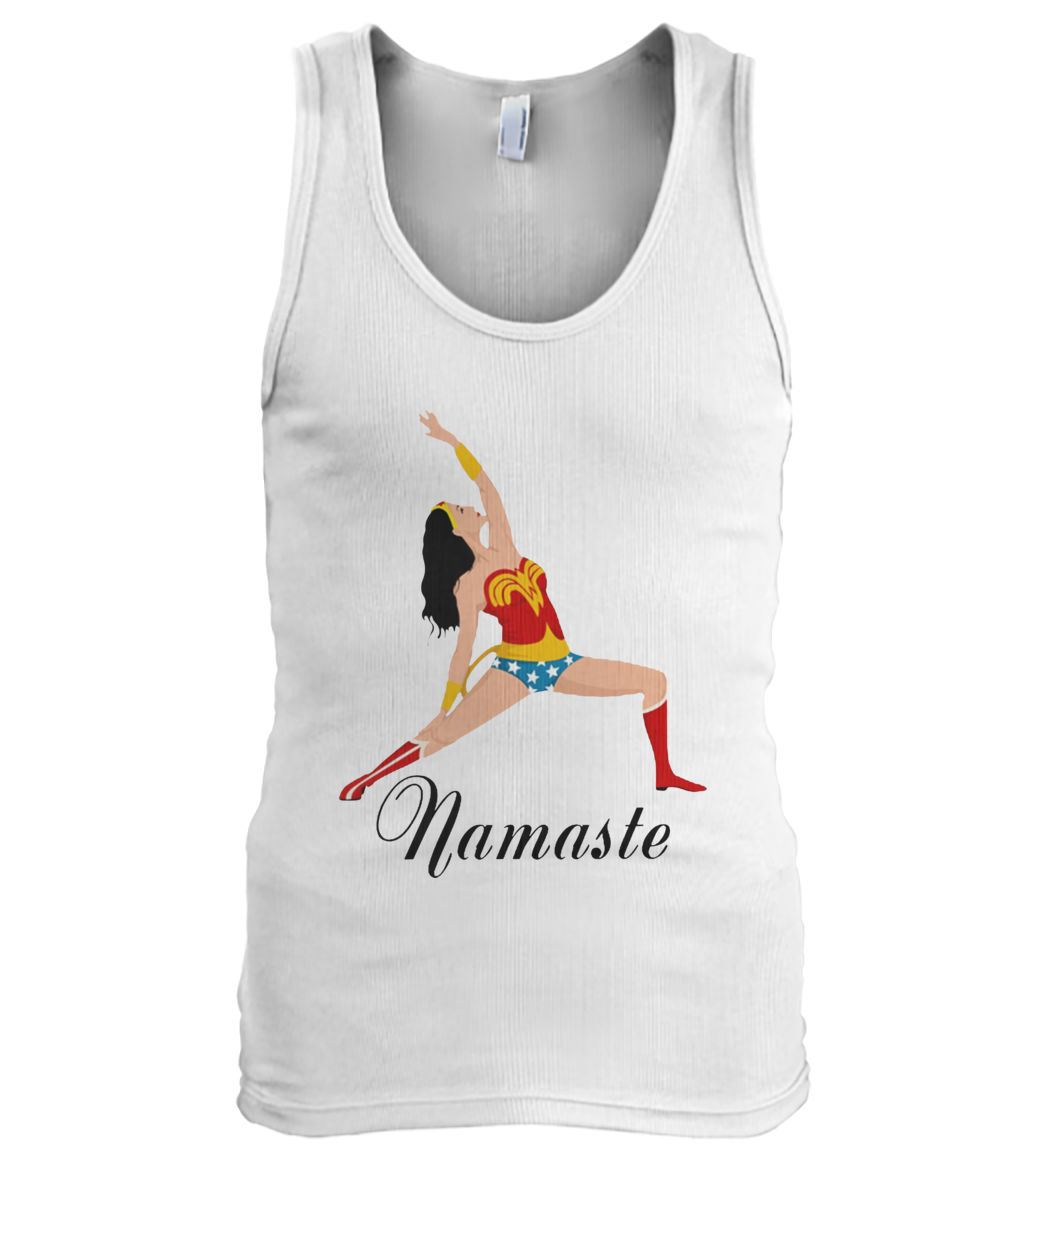 Yoga namaste wonder woman men's tank top